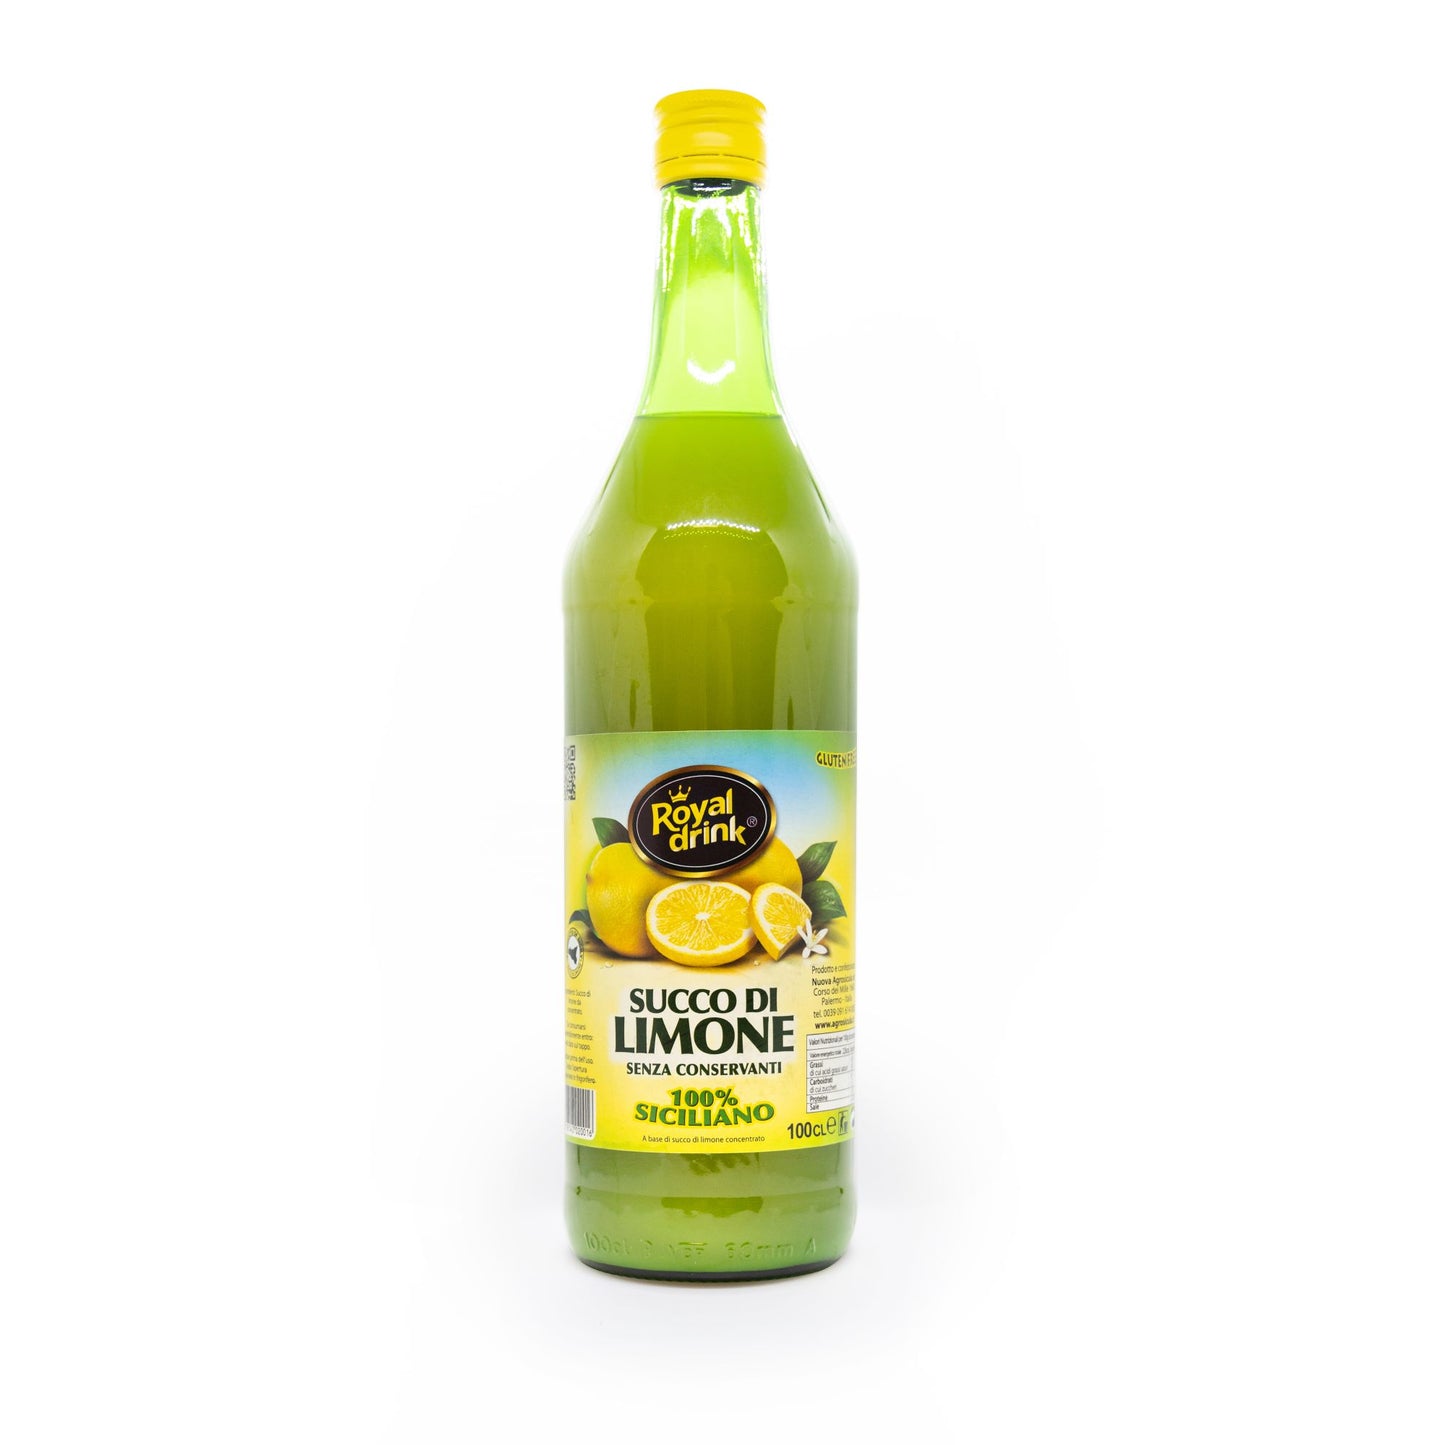 Sicilian Lemon Juice NFC 1L bottle ( Box of 6)